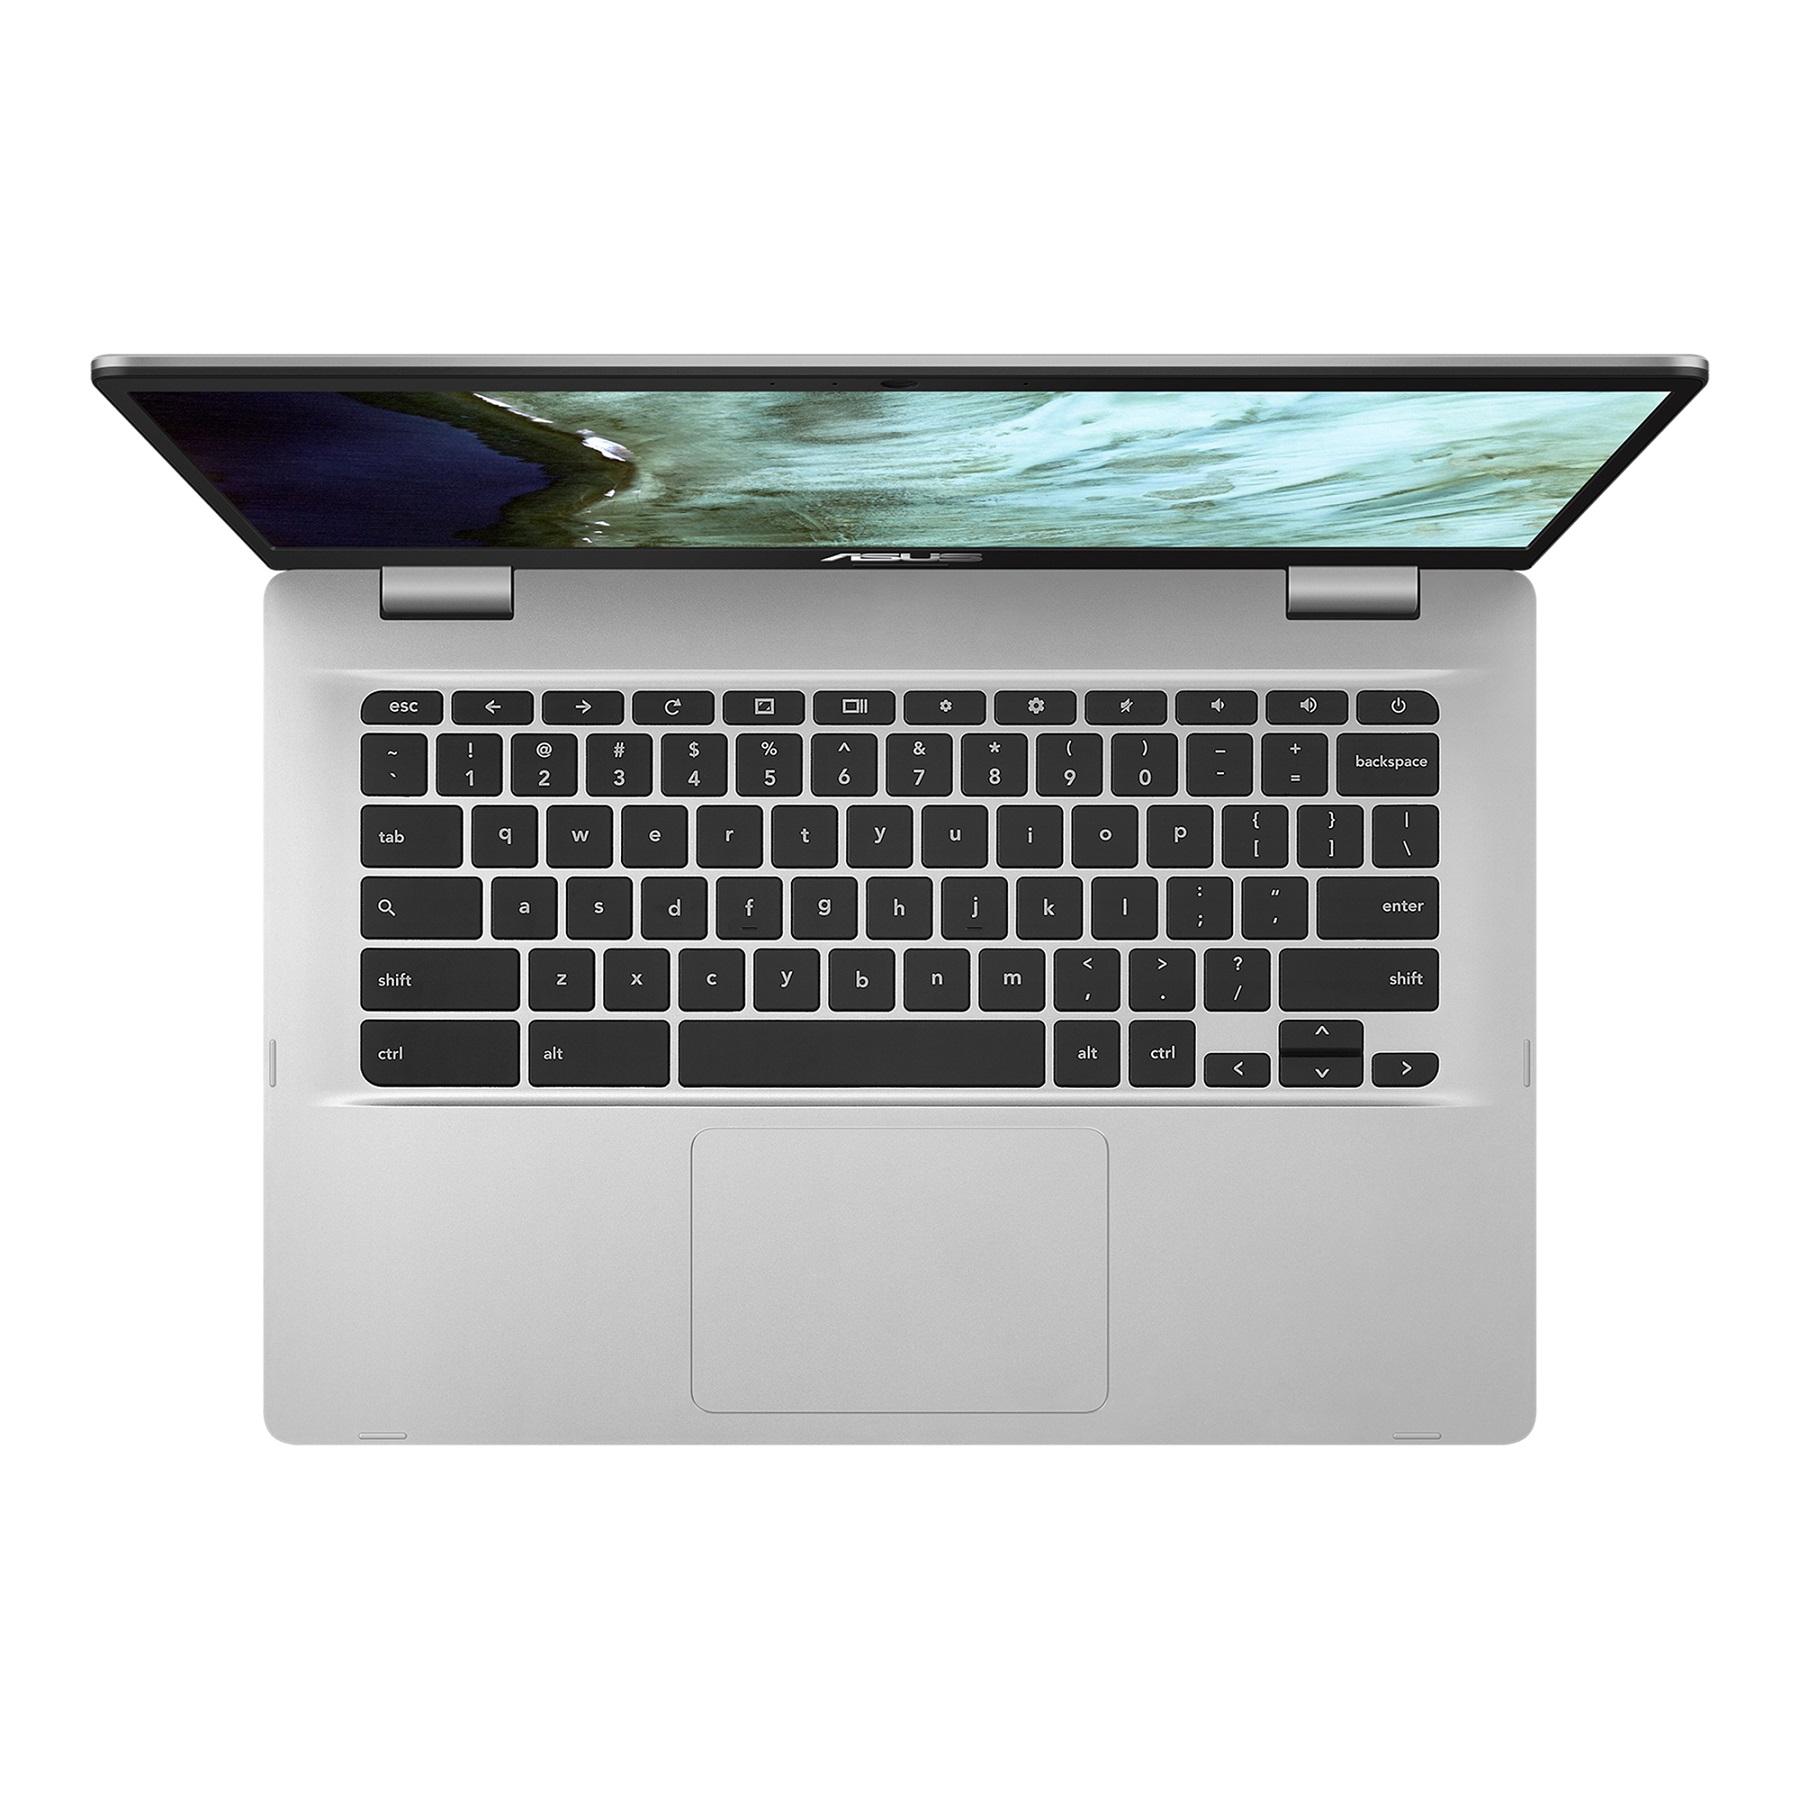 Laptop Asus C423n Plata 14 Celeron N3350 4gb De Ram, 64gb Mmc Cromebook Gris